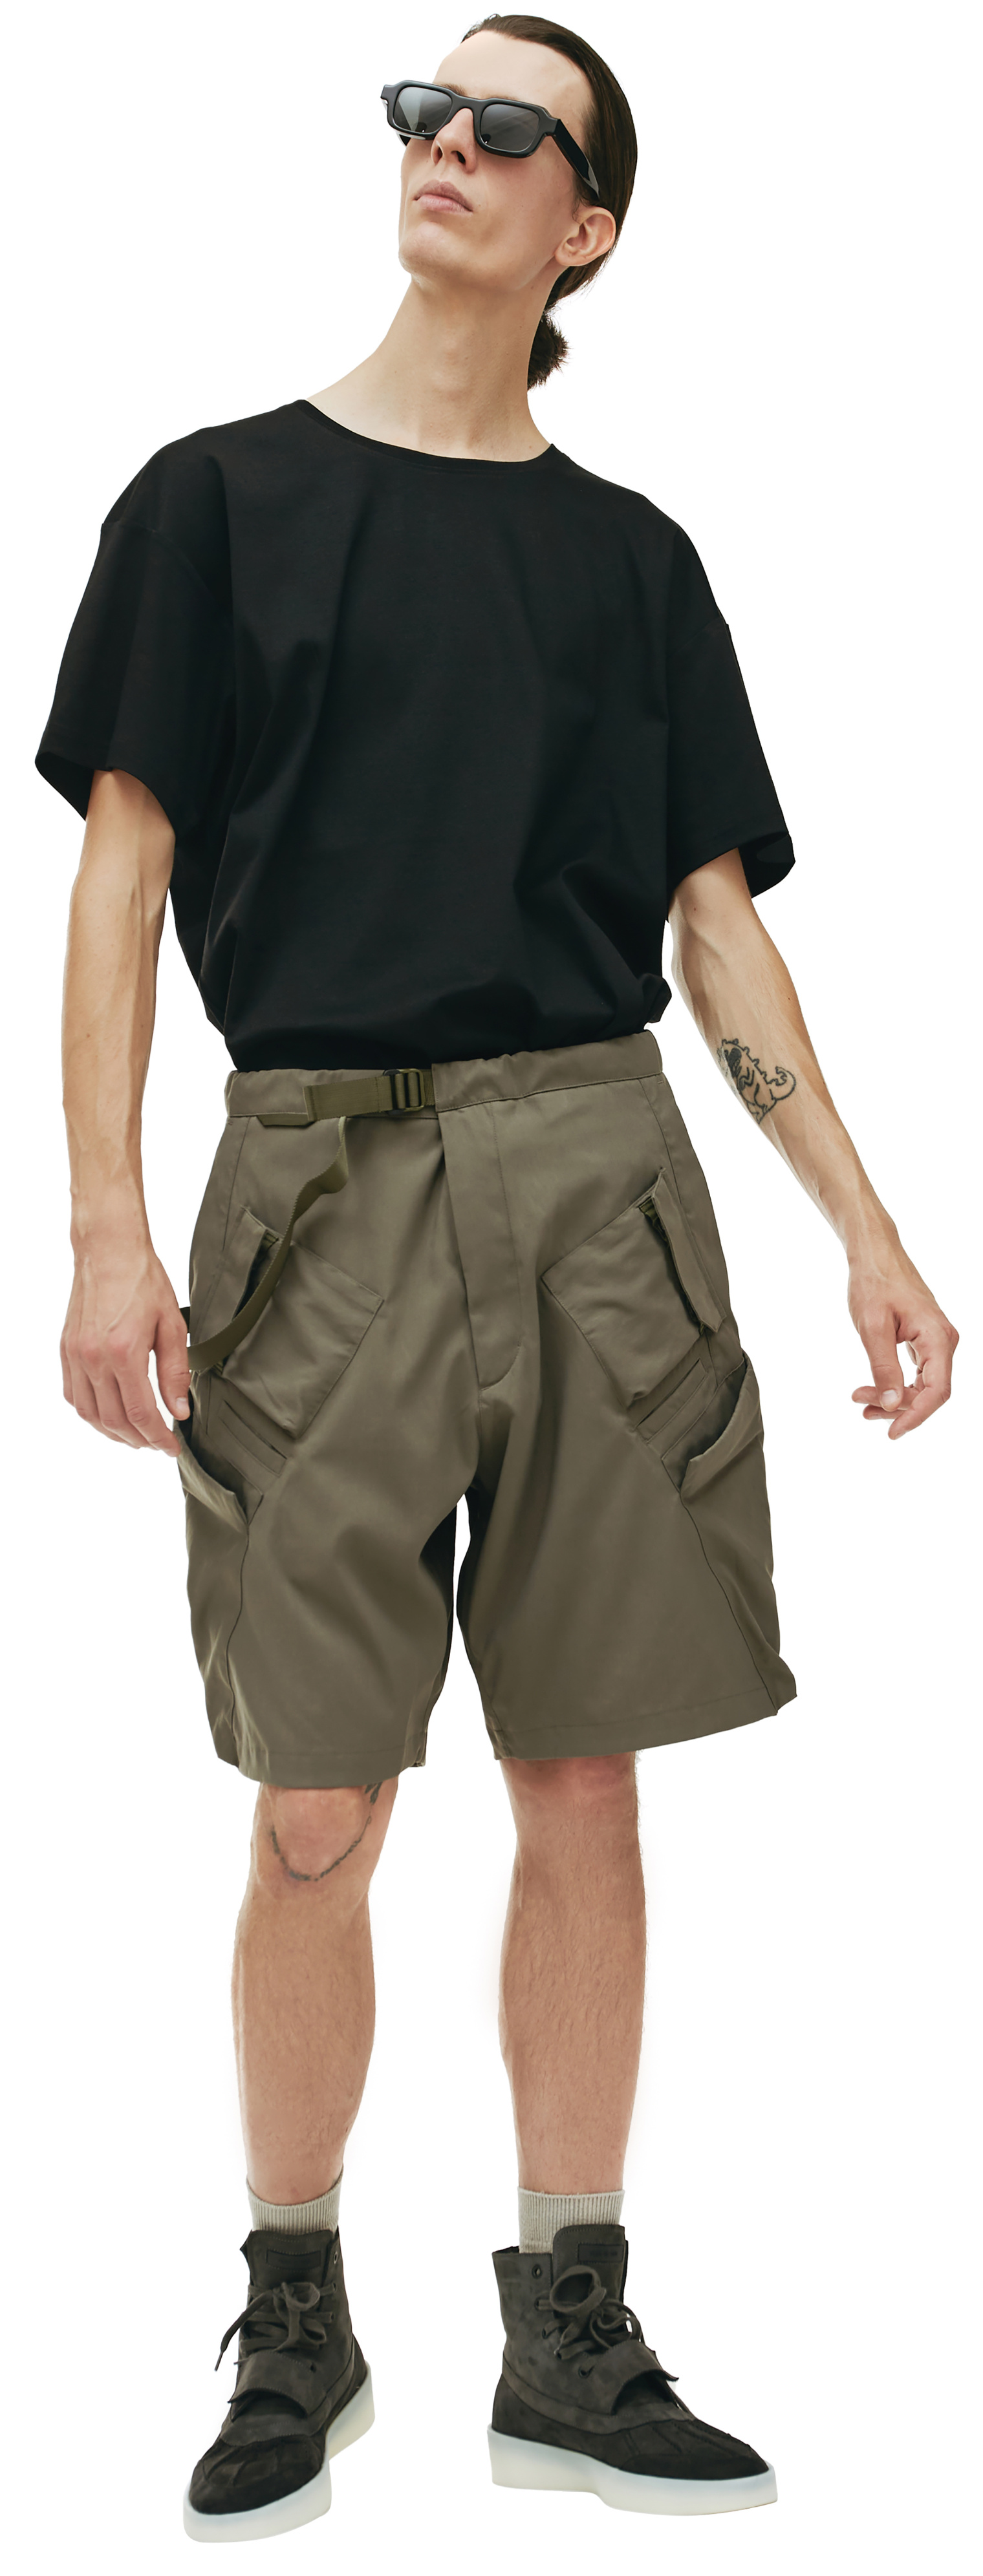 Acronym SP29 cargo shorts